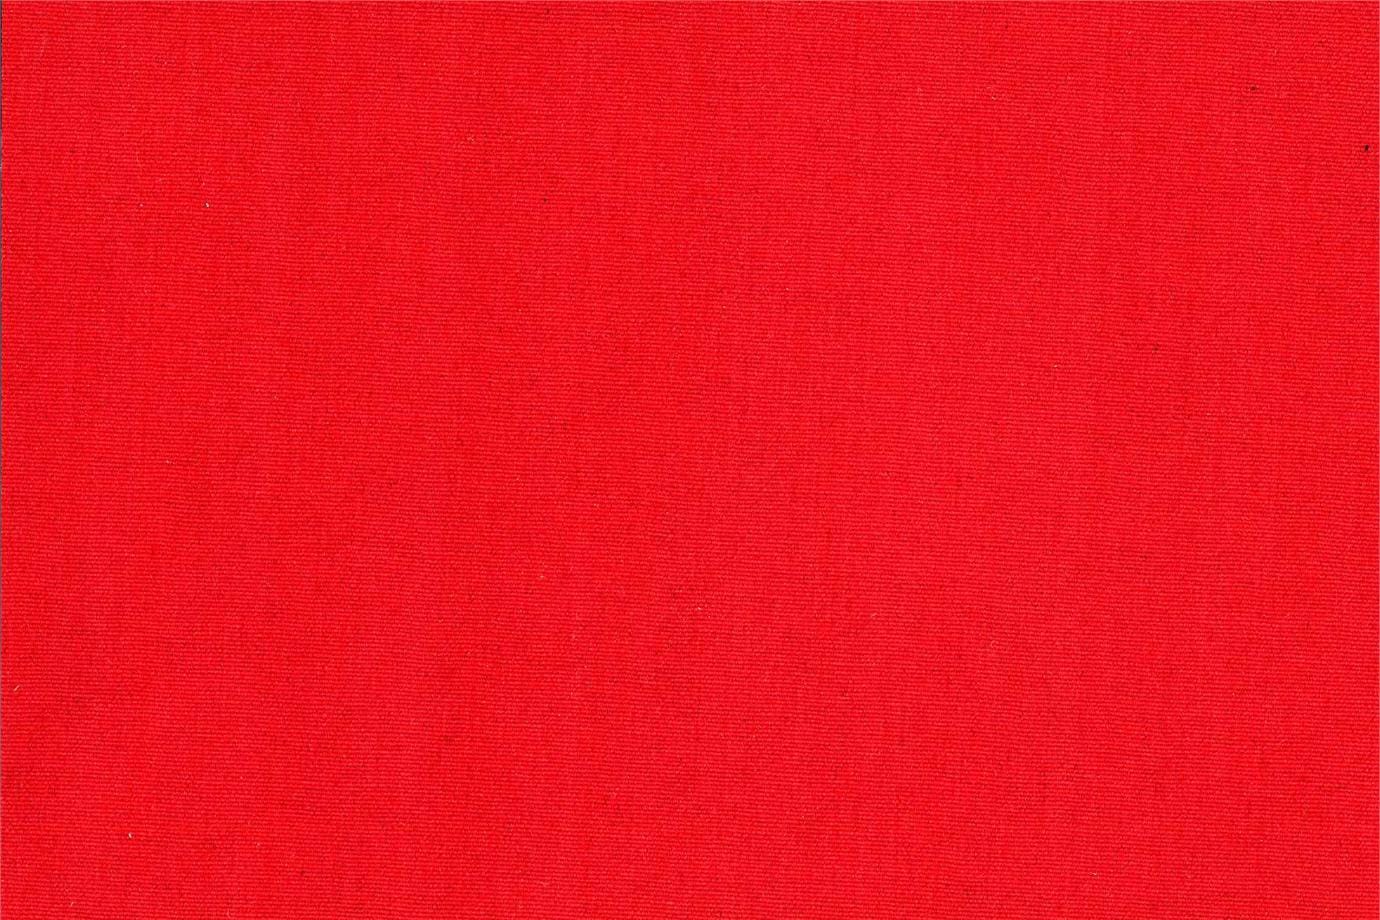 J1843 POGGIOREALE 027 Rosso home decoration fabric